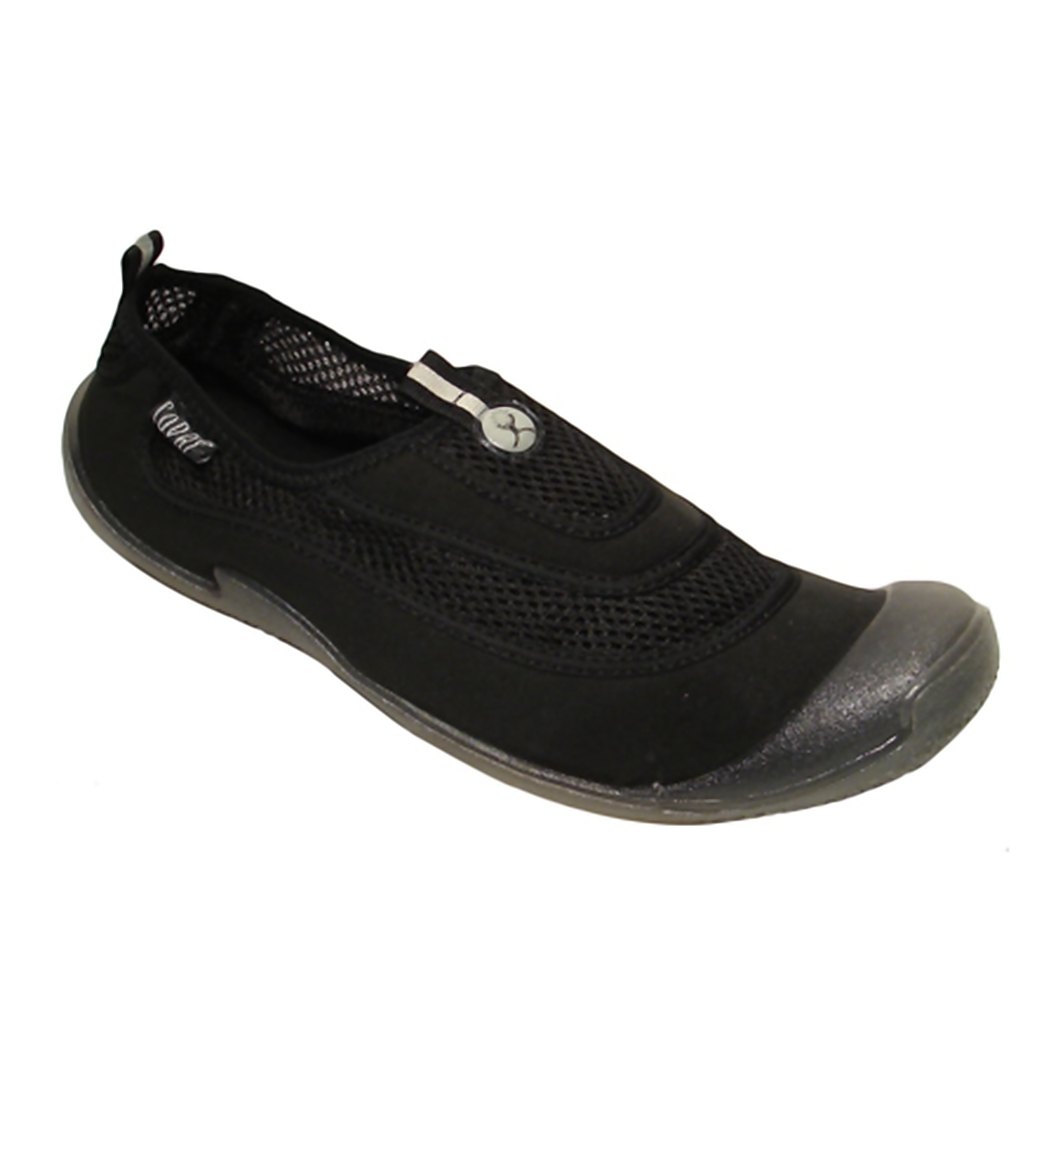 Cudas Men's Flatwater Water Shoes - Black 13 - Swimoutlet.com